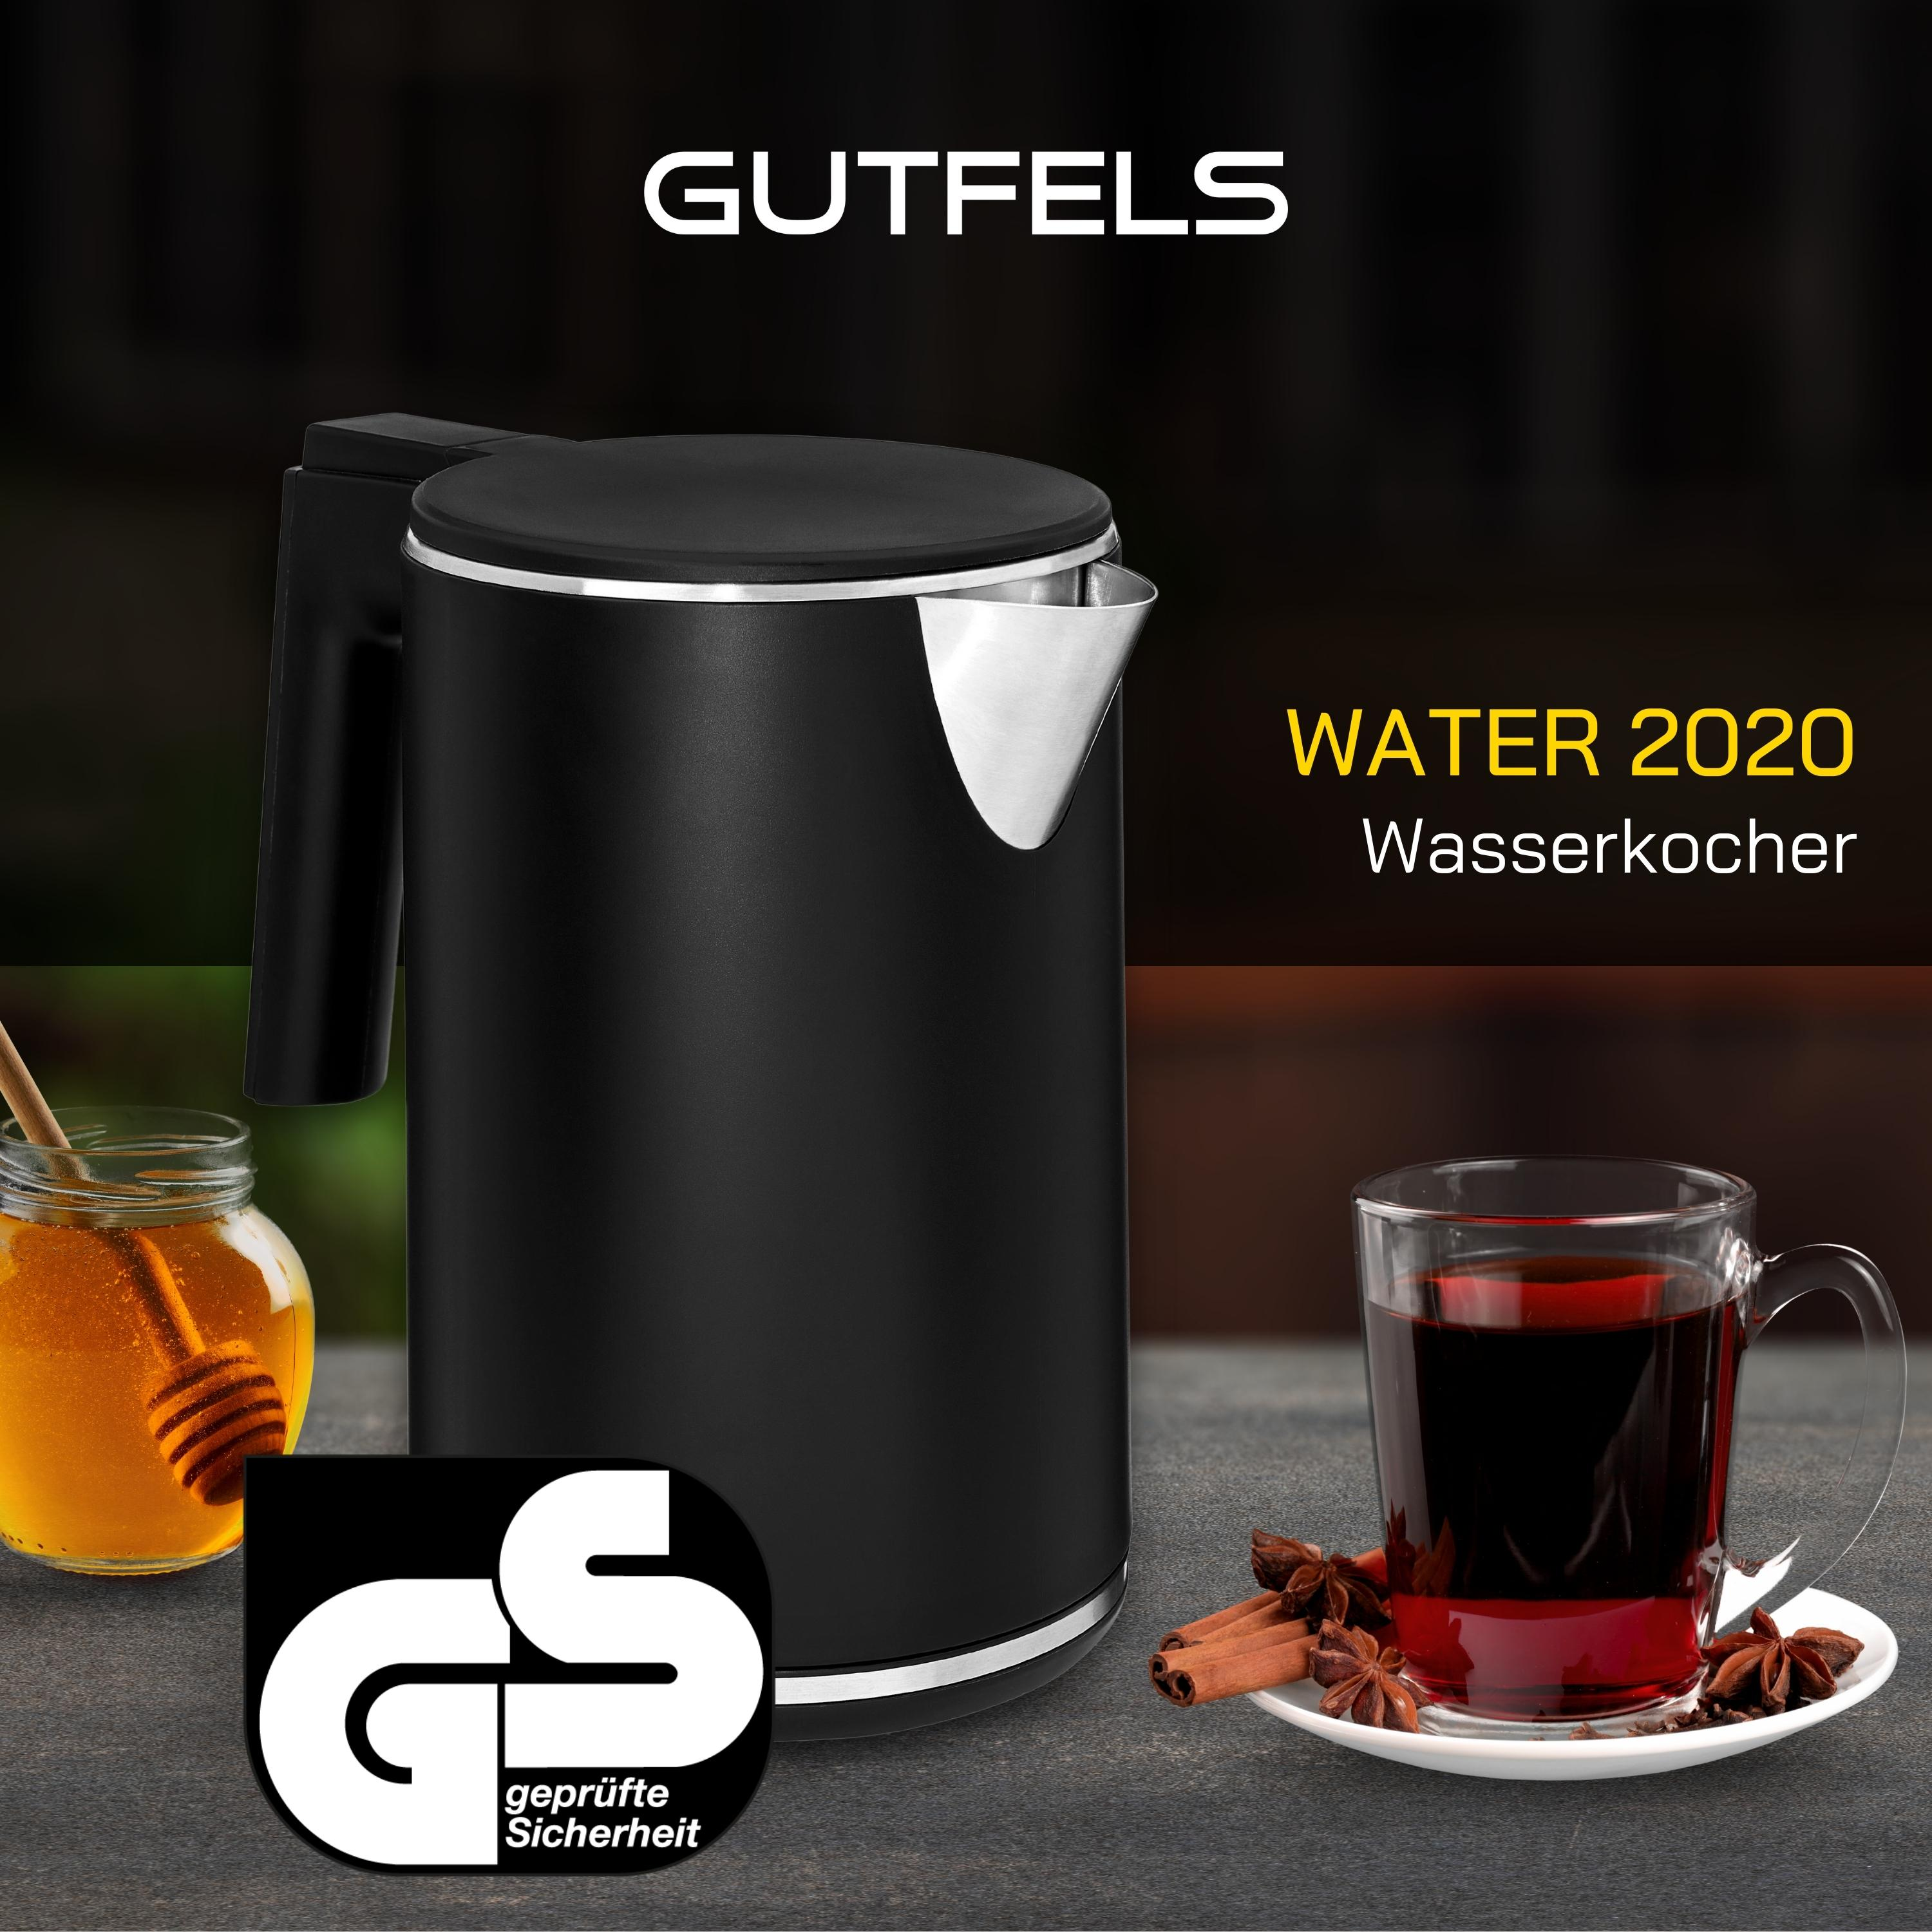 GUTFELS WATER 2020 Wasserkocher, Schwarz